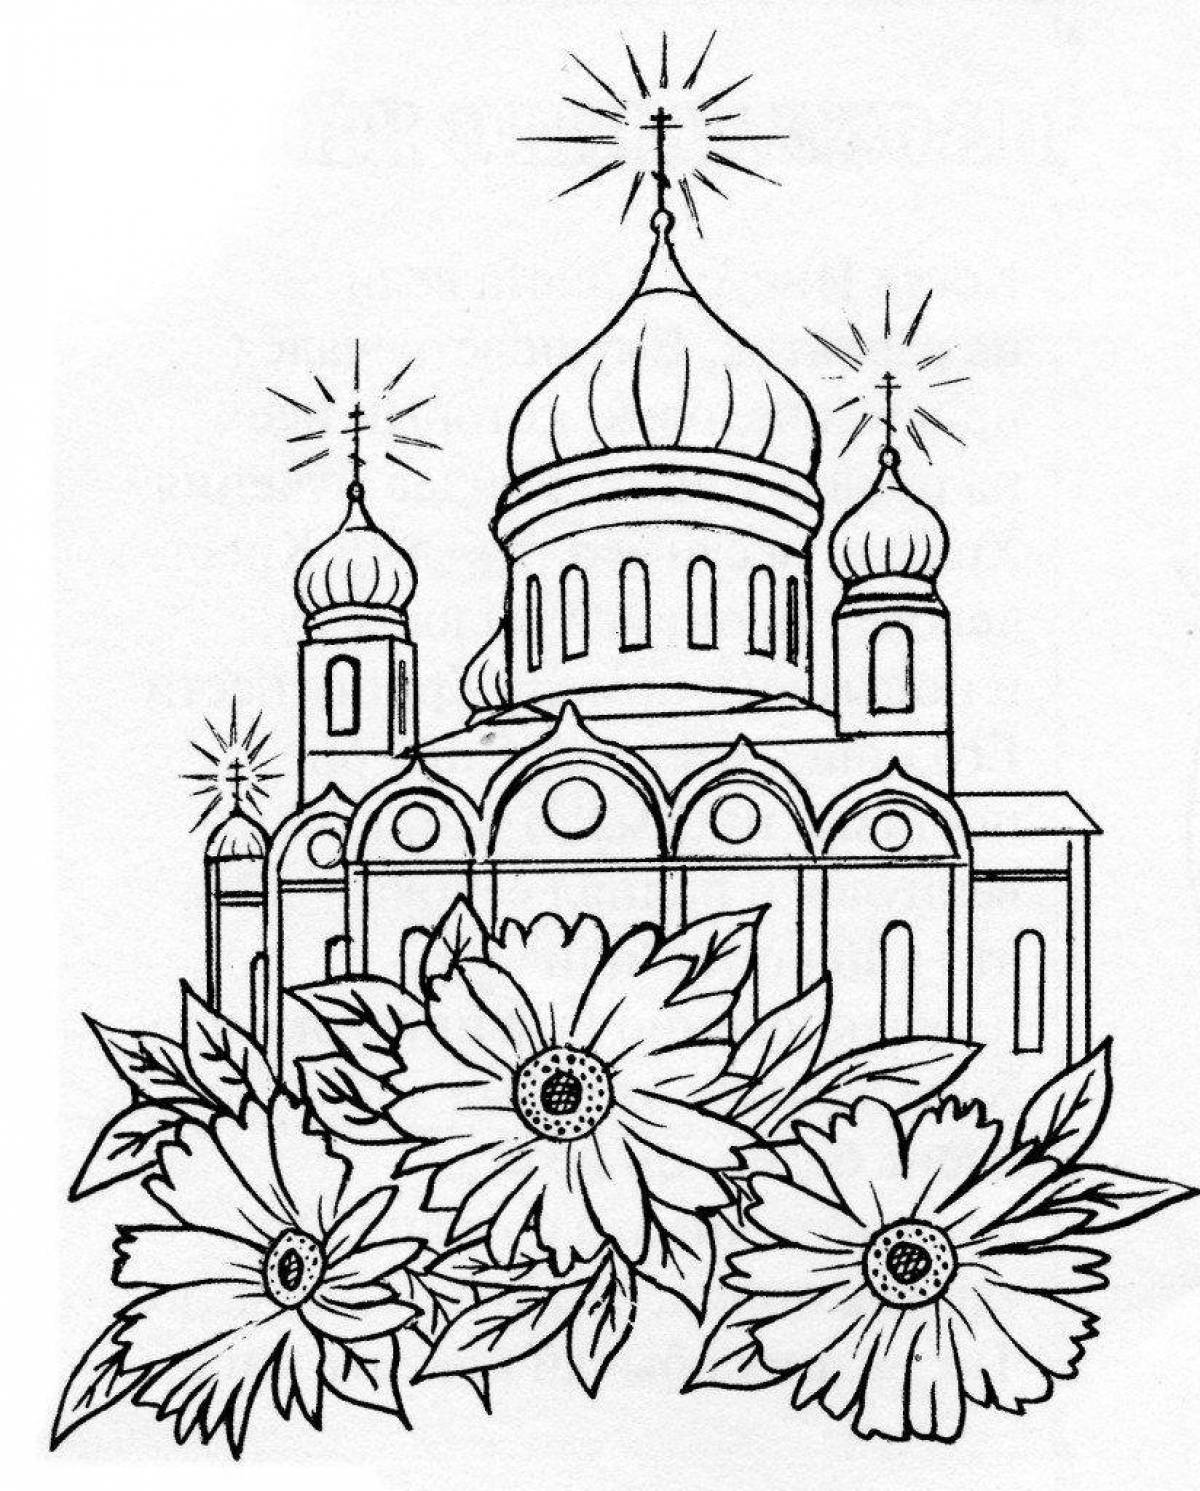 Раскраска православный храм для детей